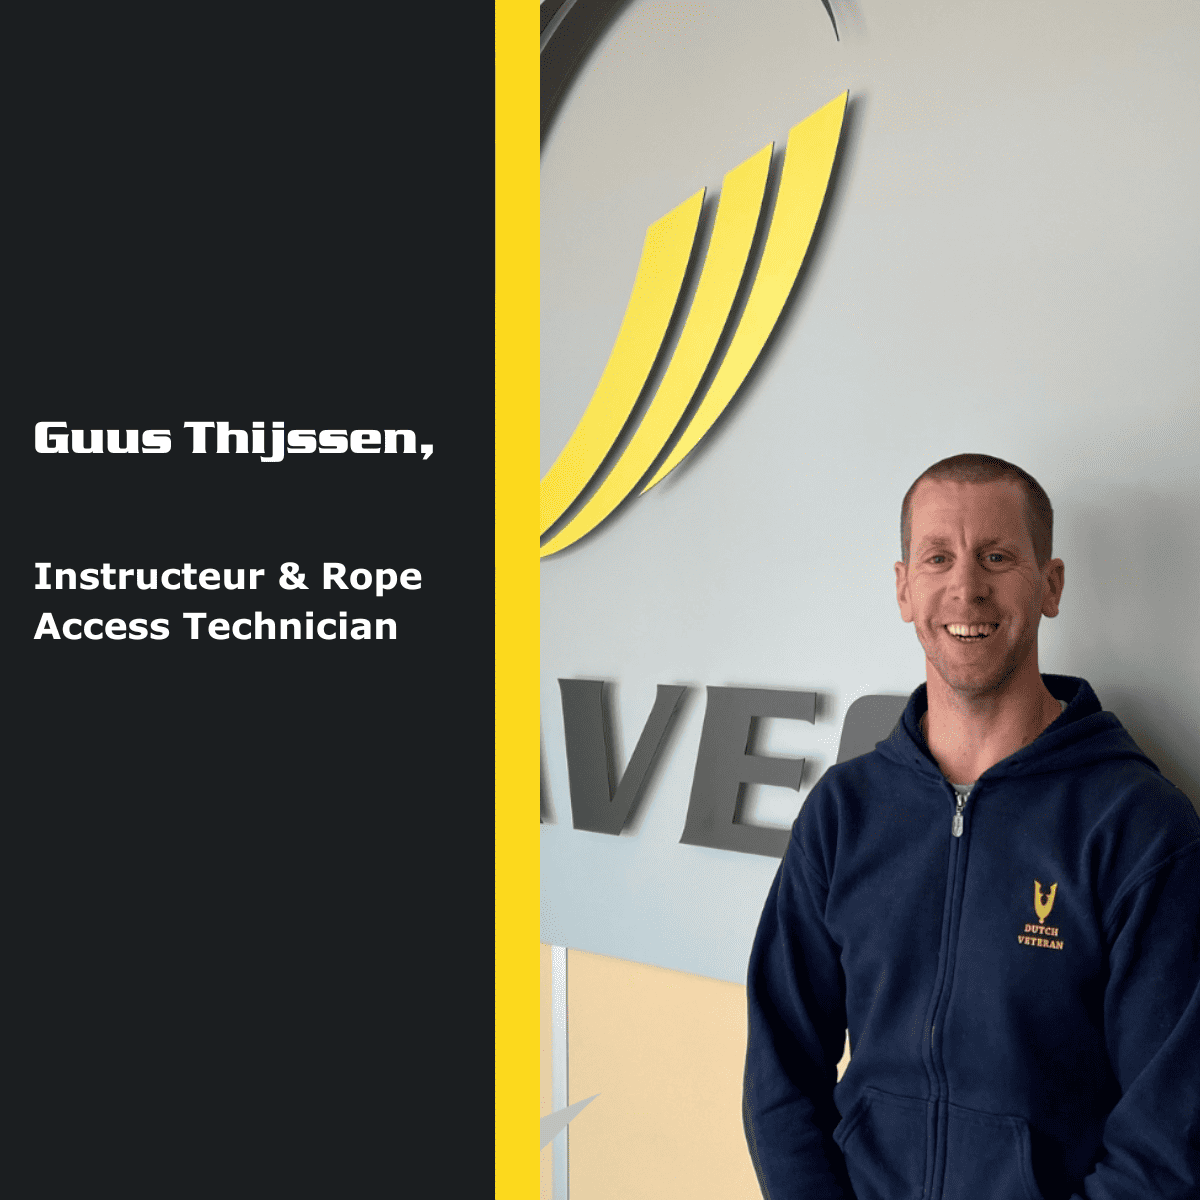 Guus Thijssen